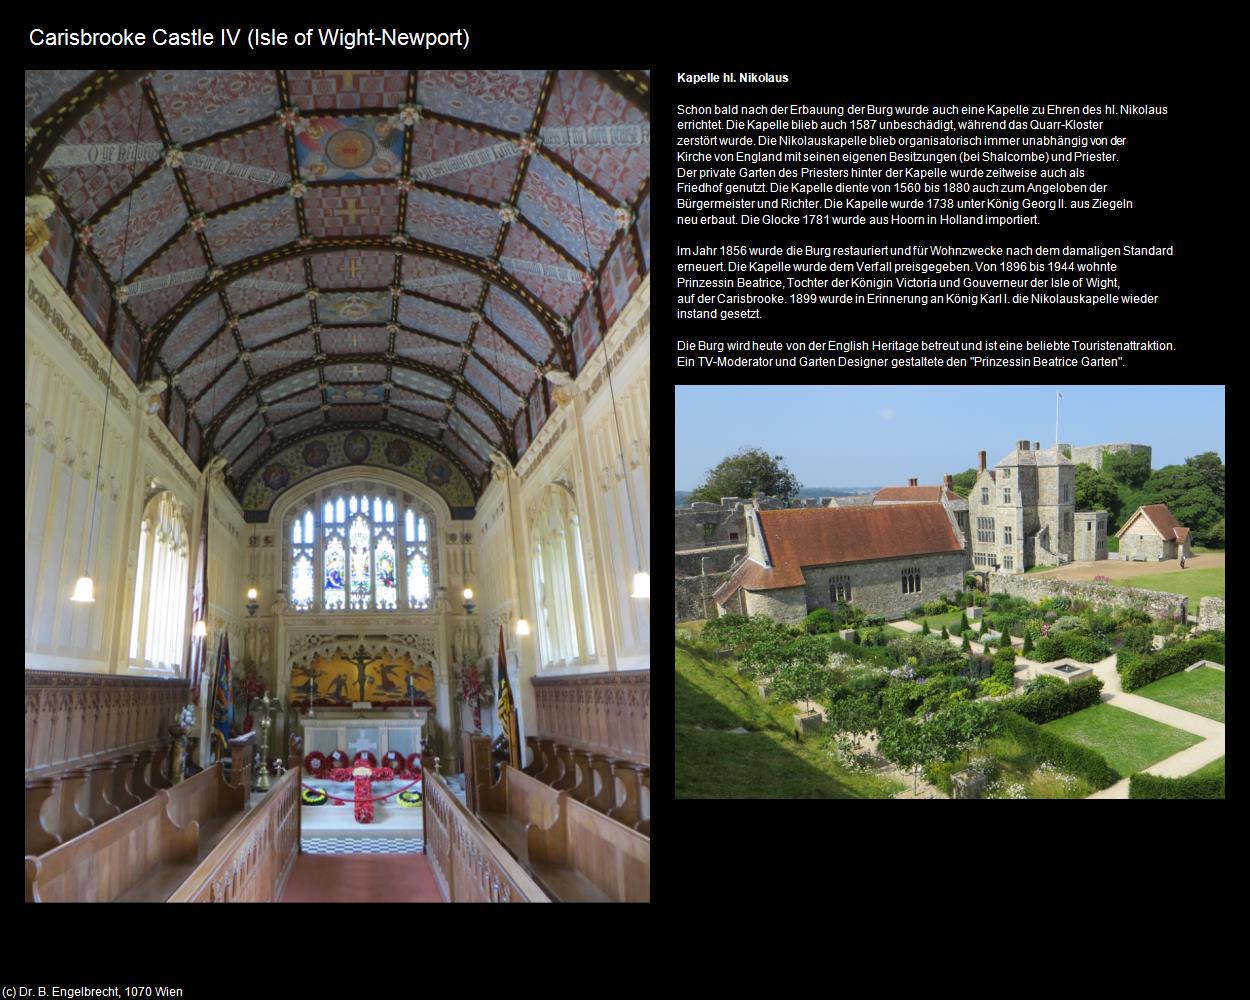 Carisbrooke Castle IV (Newport) (Isle of Wight) in Kulturatlas-ENGLAND und WALES